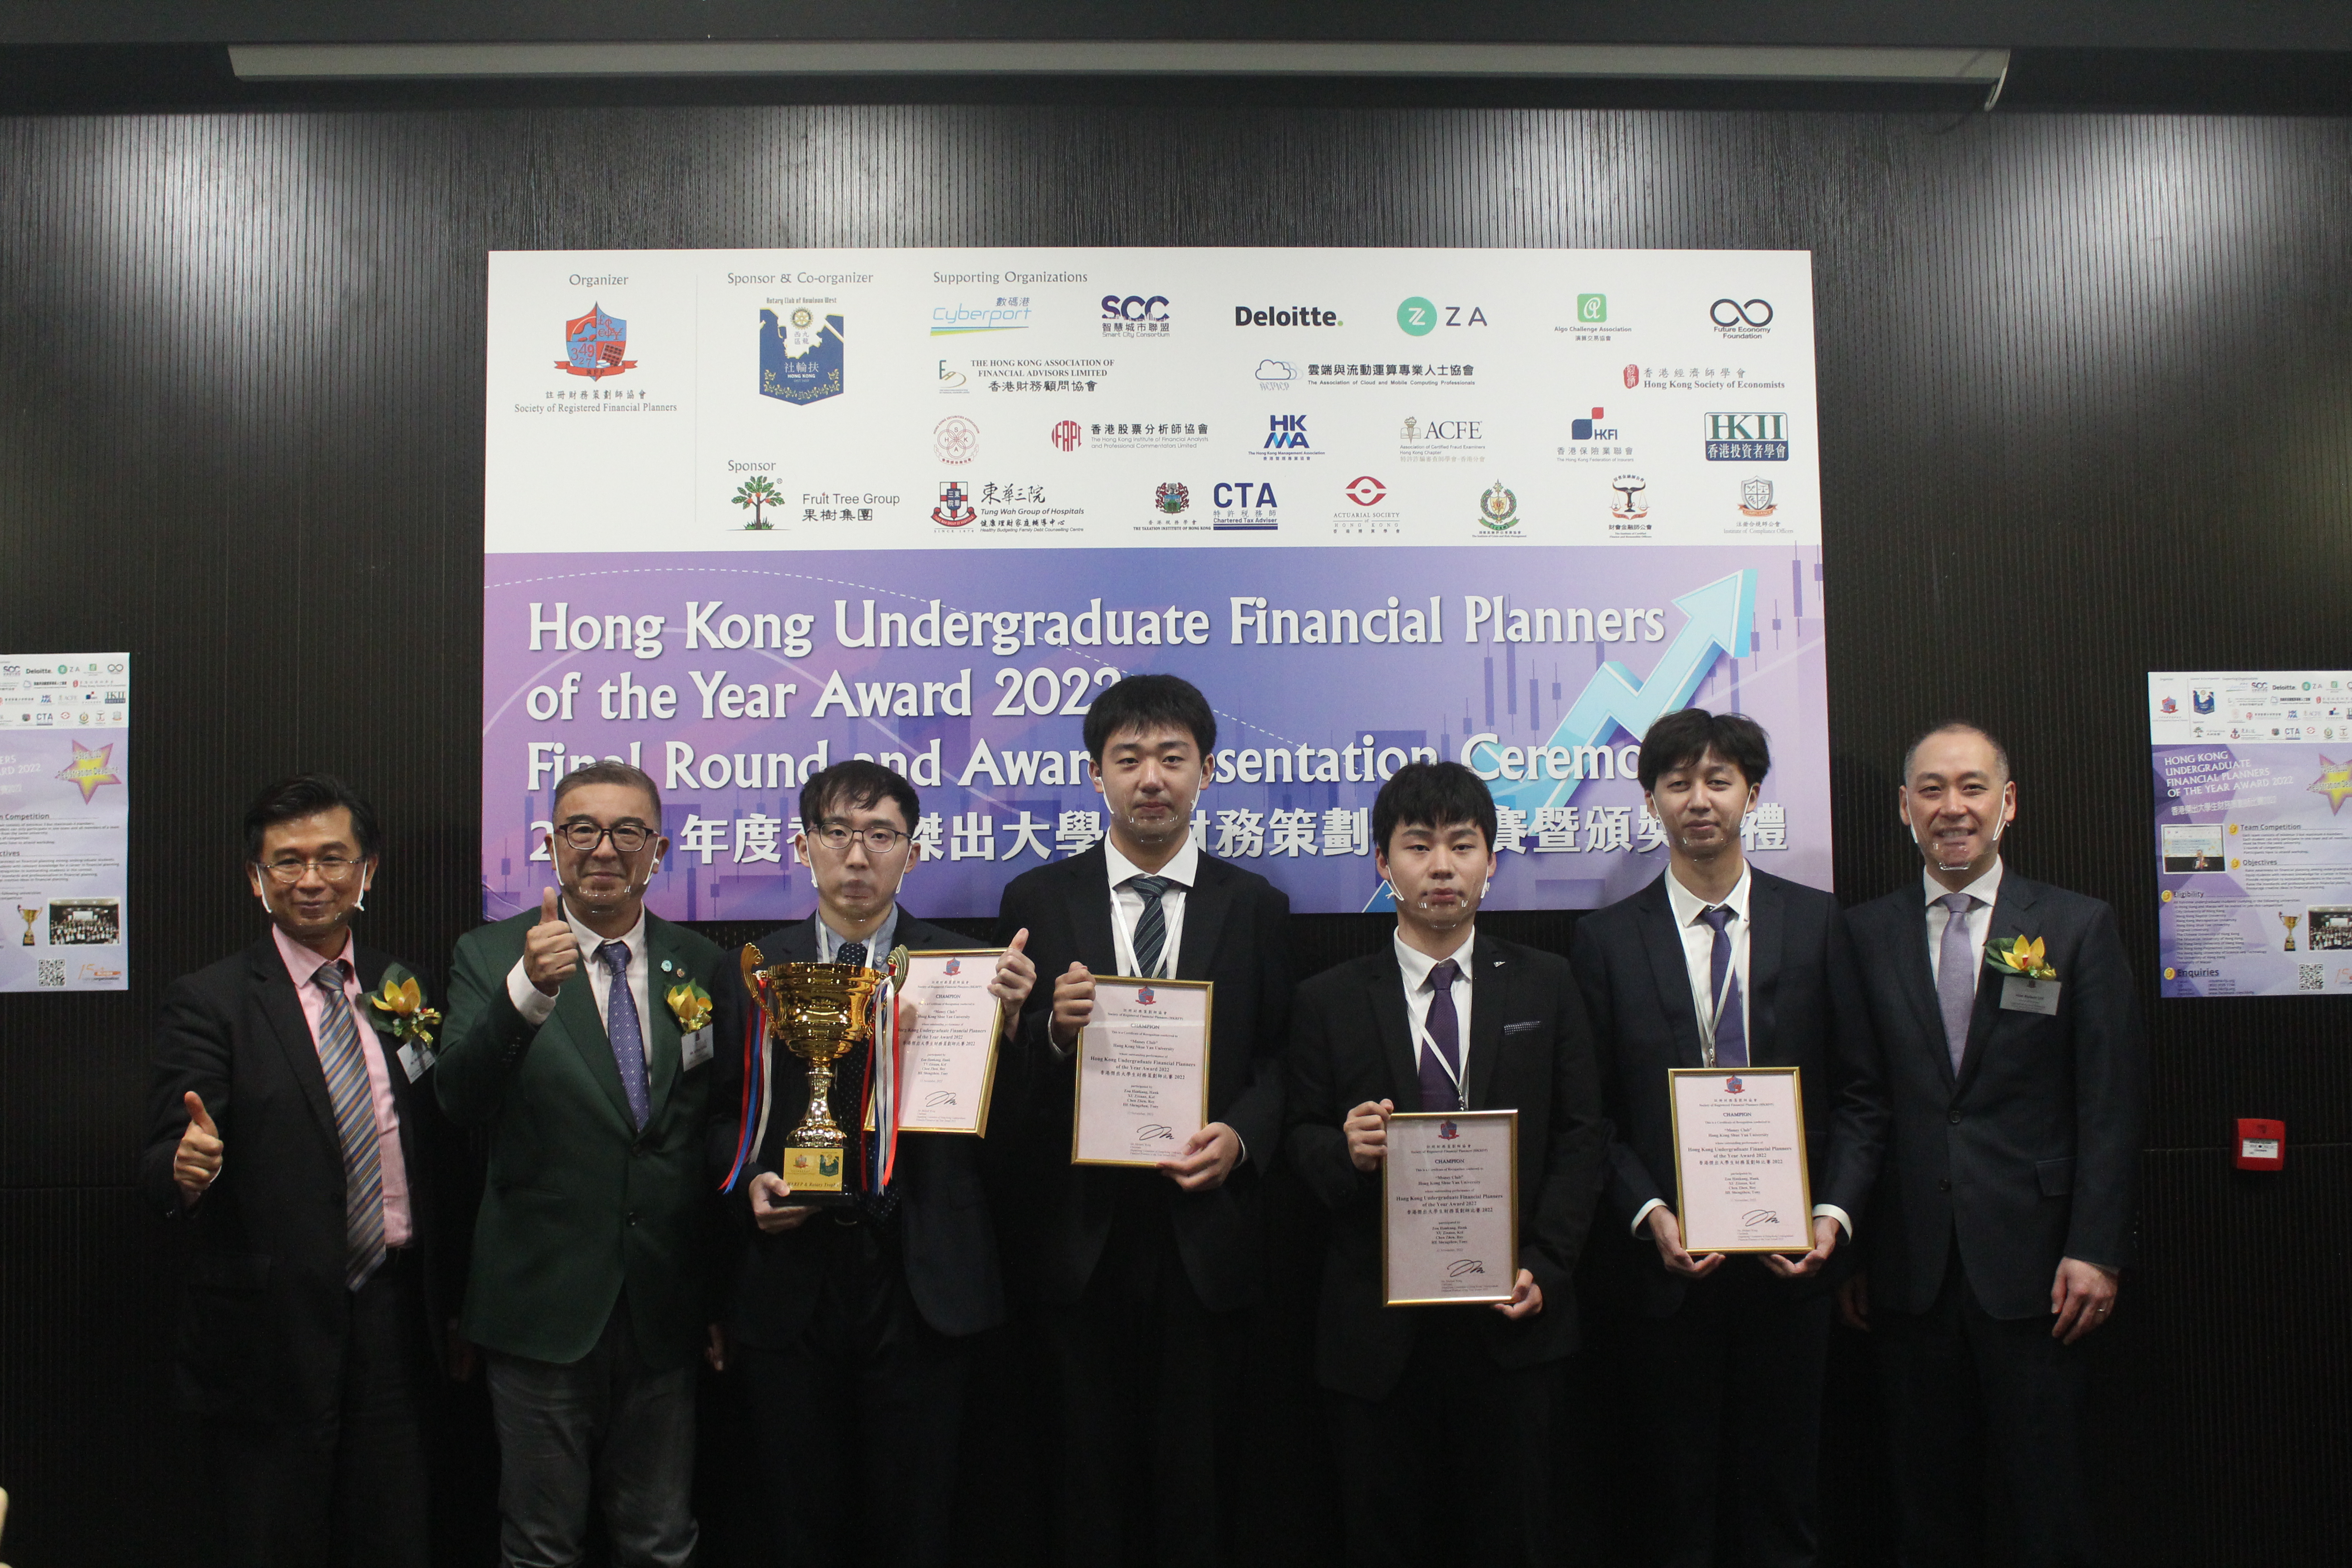 金融科技学生夺得2022年度香港杰出大学生财务策划师比赛冠军